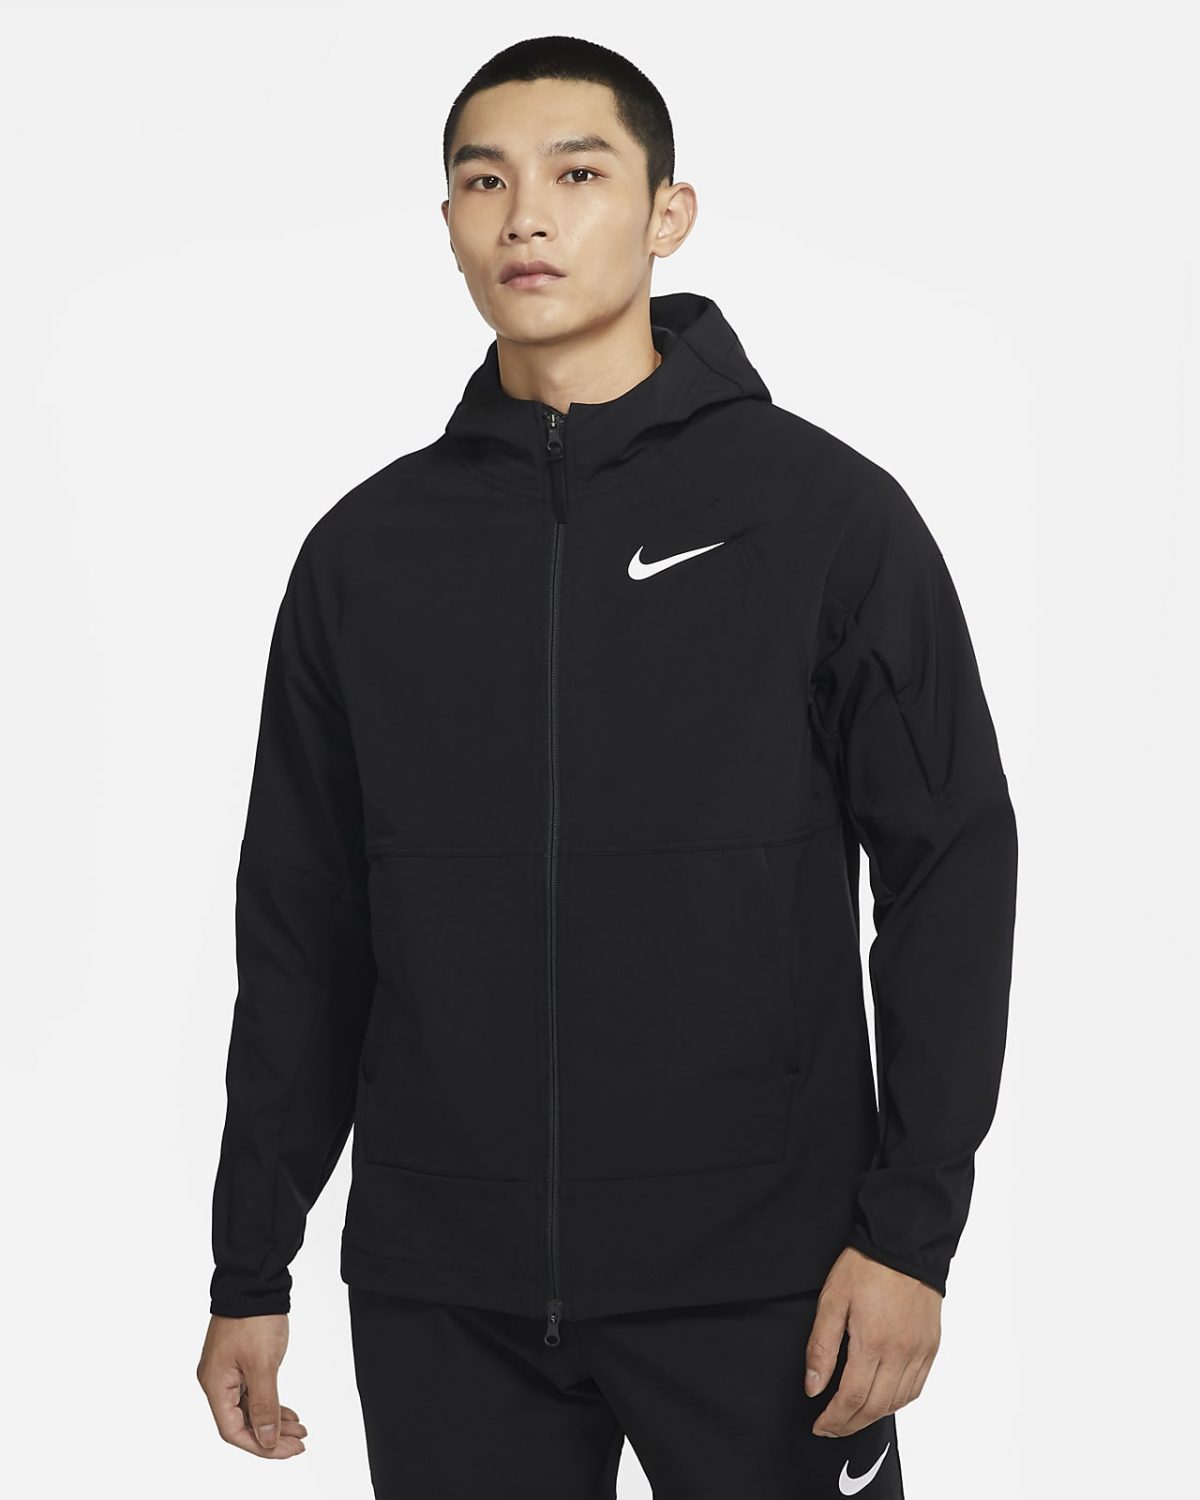 Мужская куртка Nike Pro Vent Max фото